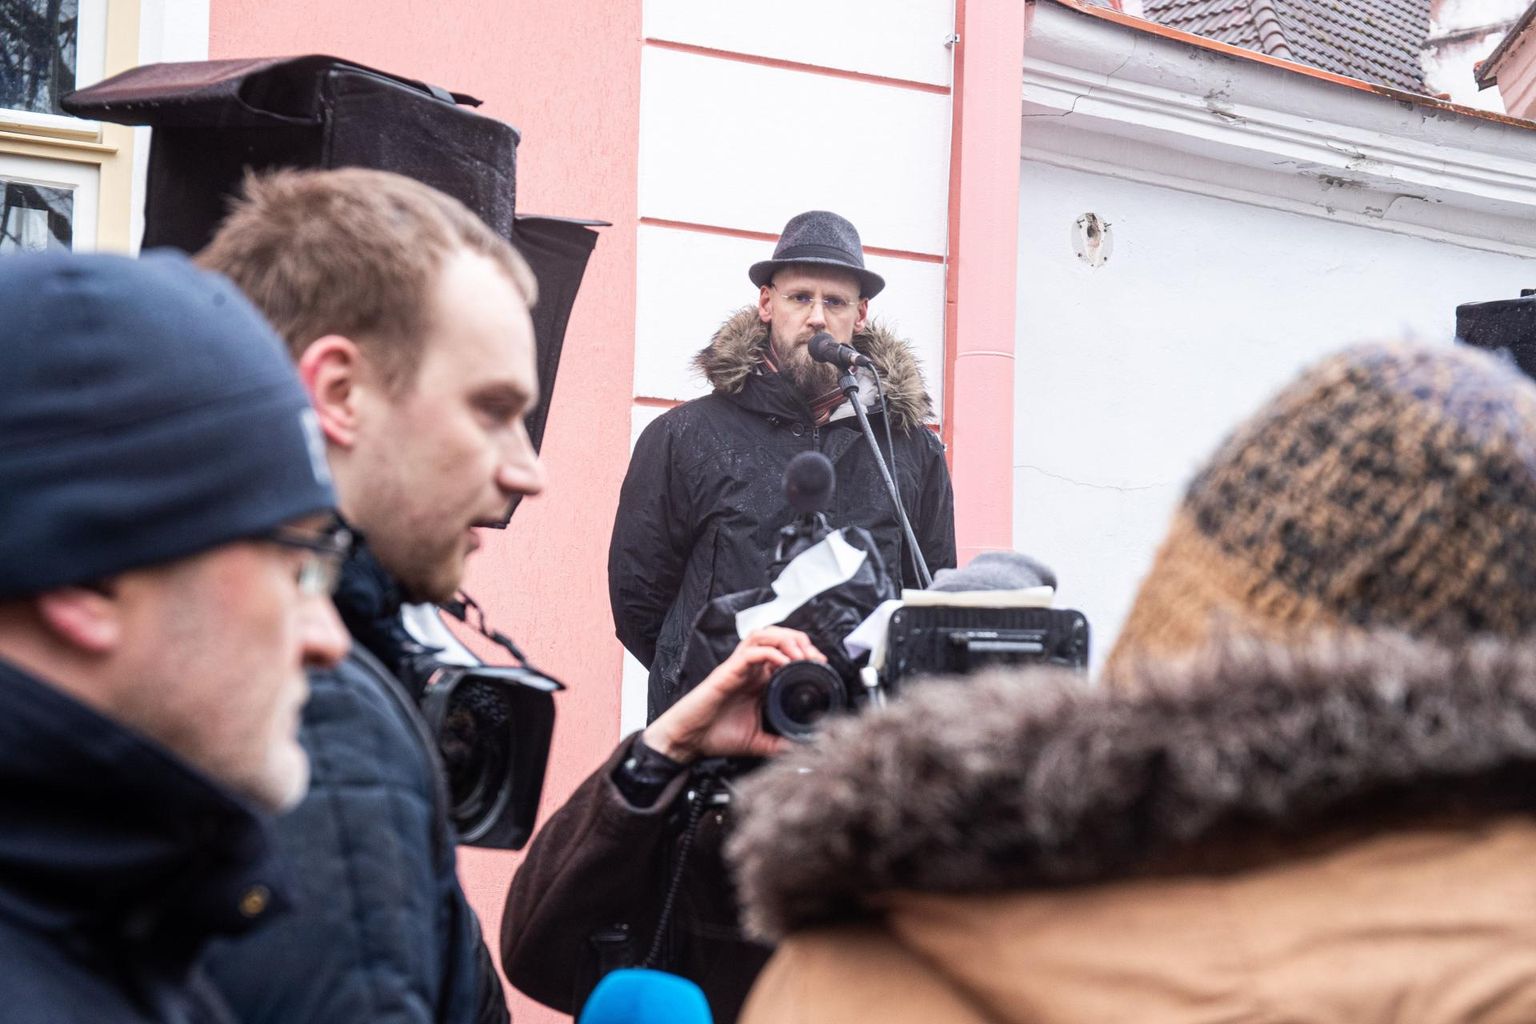 Акция протеста, организованная Варро Вооглайдом перед домом Стенбока в середине февраля. На переднем плане Сандер Пунамяэ с микрофоном Postimees, Варро Вооглайд на сцене.